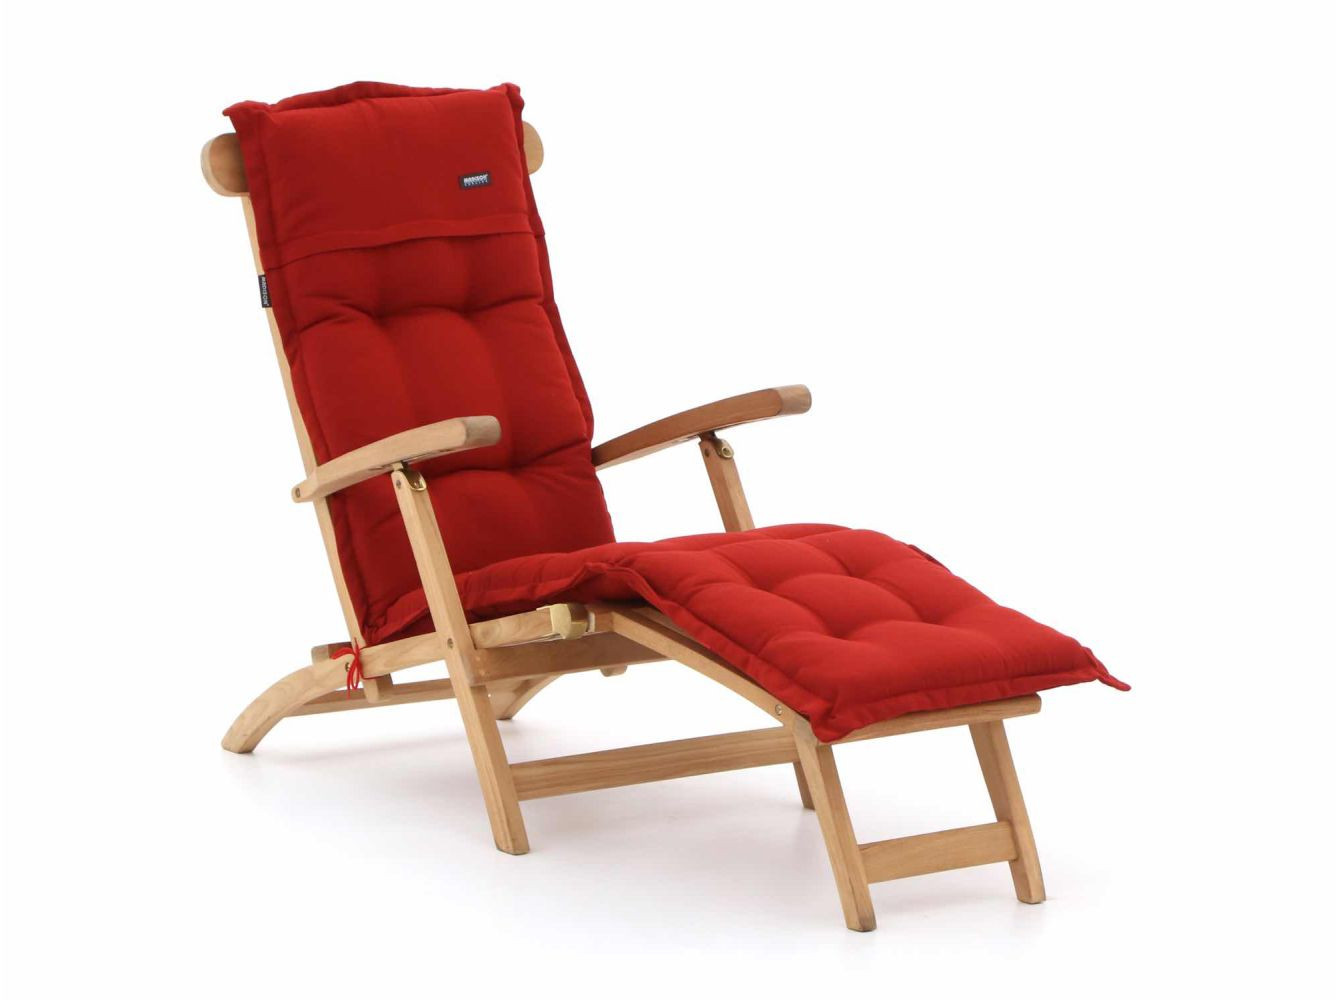 Sunyard Country deckchair - Laagste prijsgarantie!